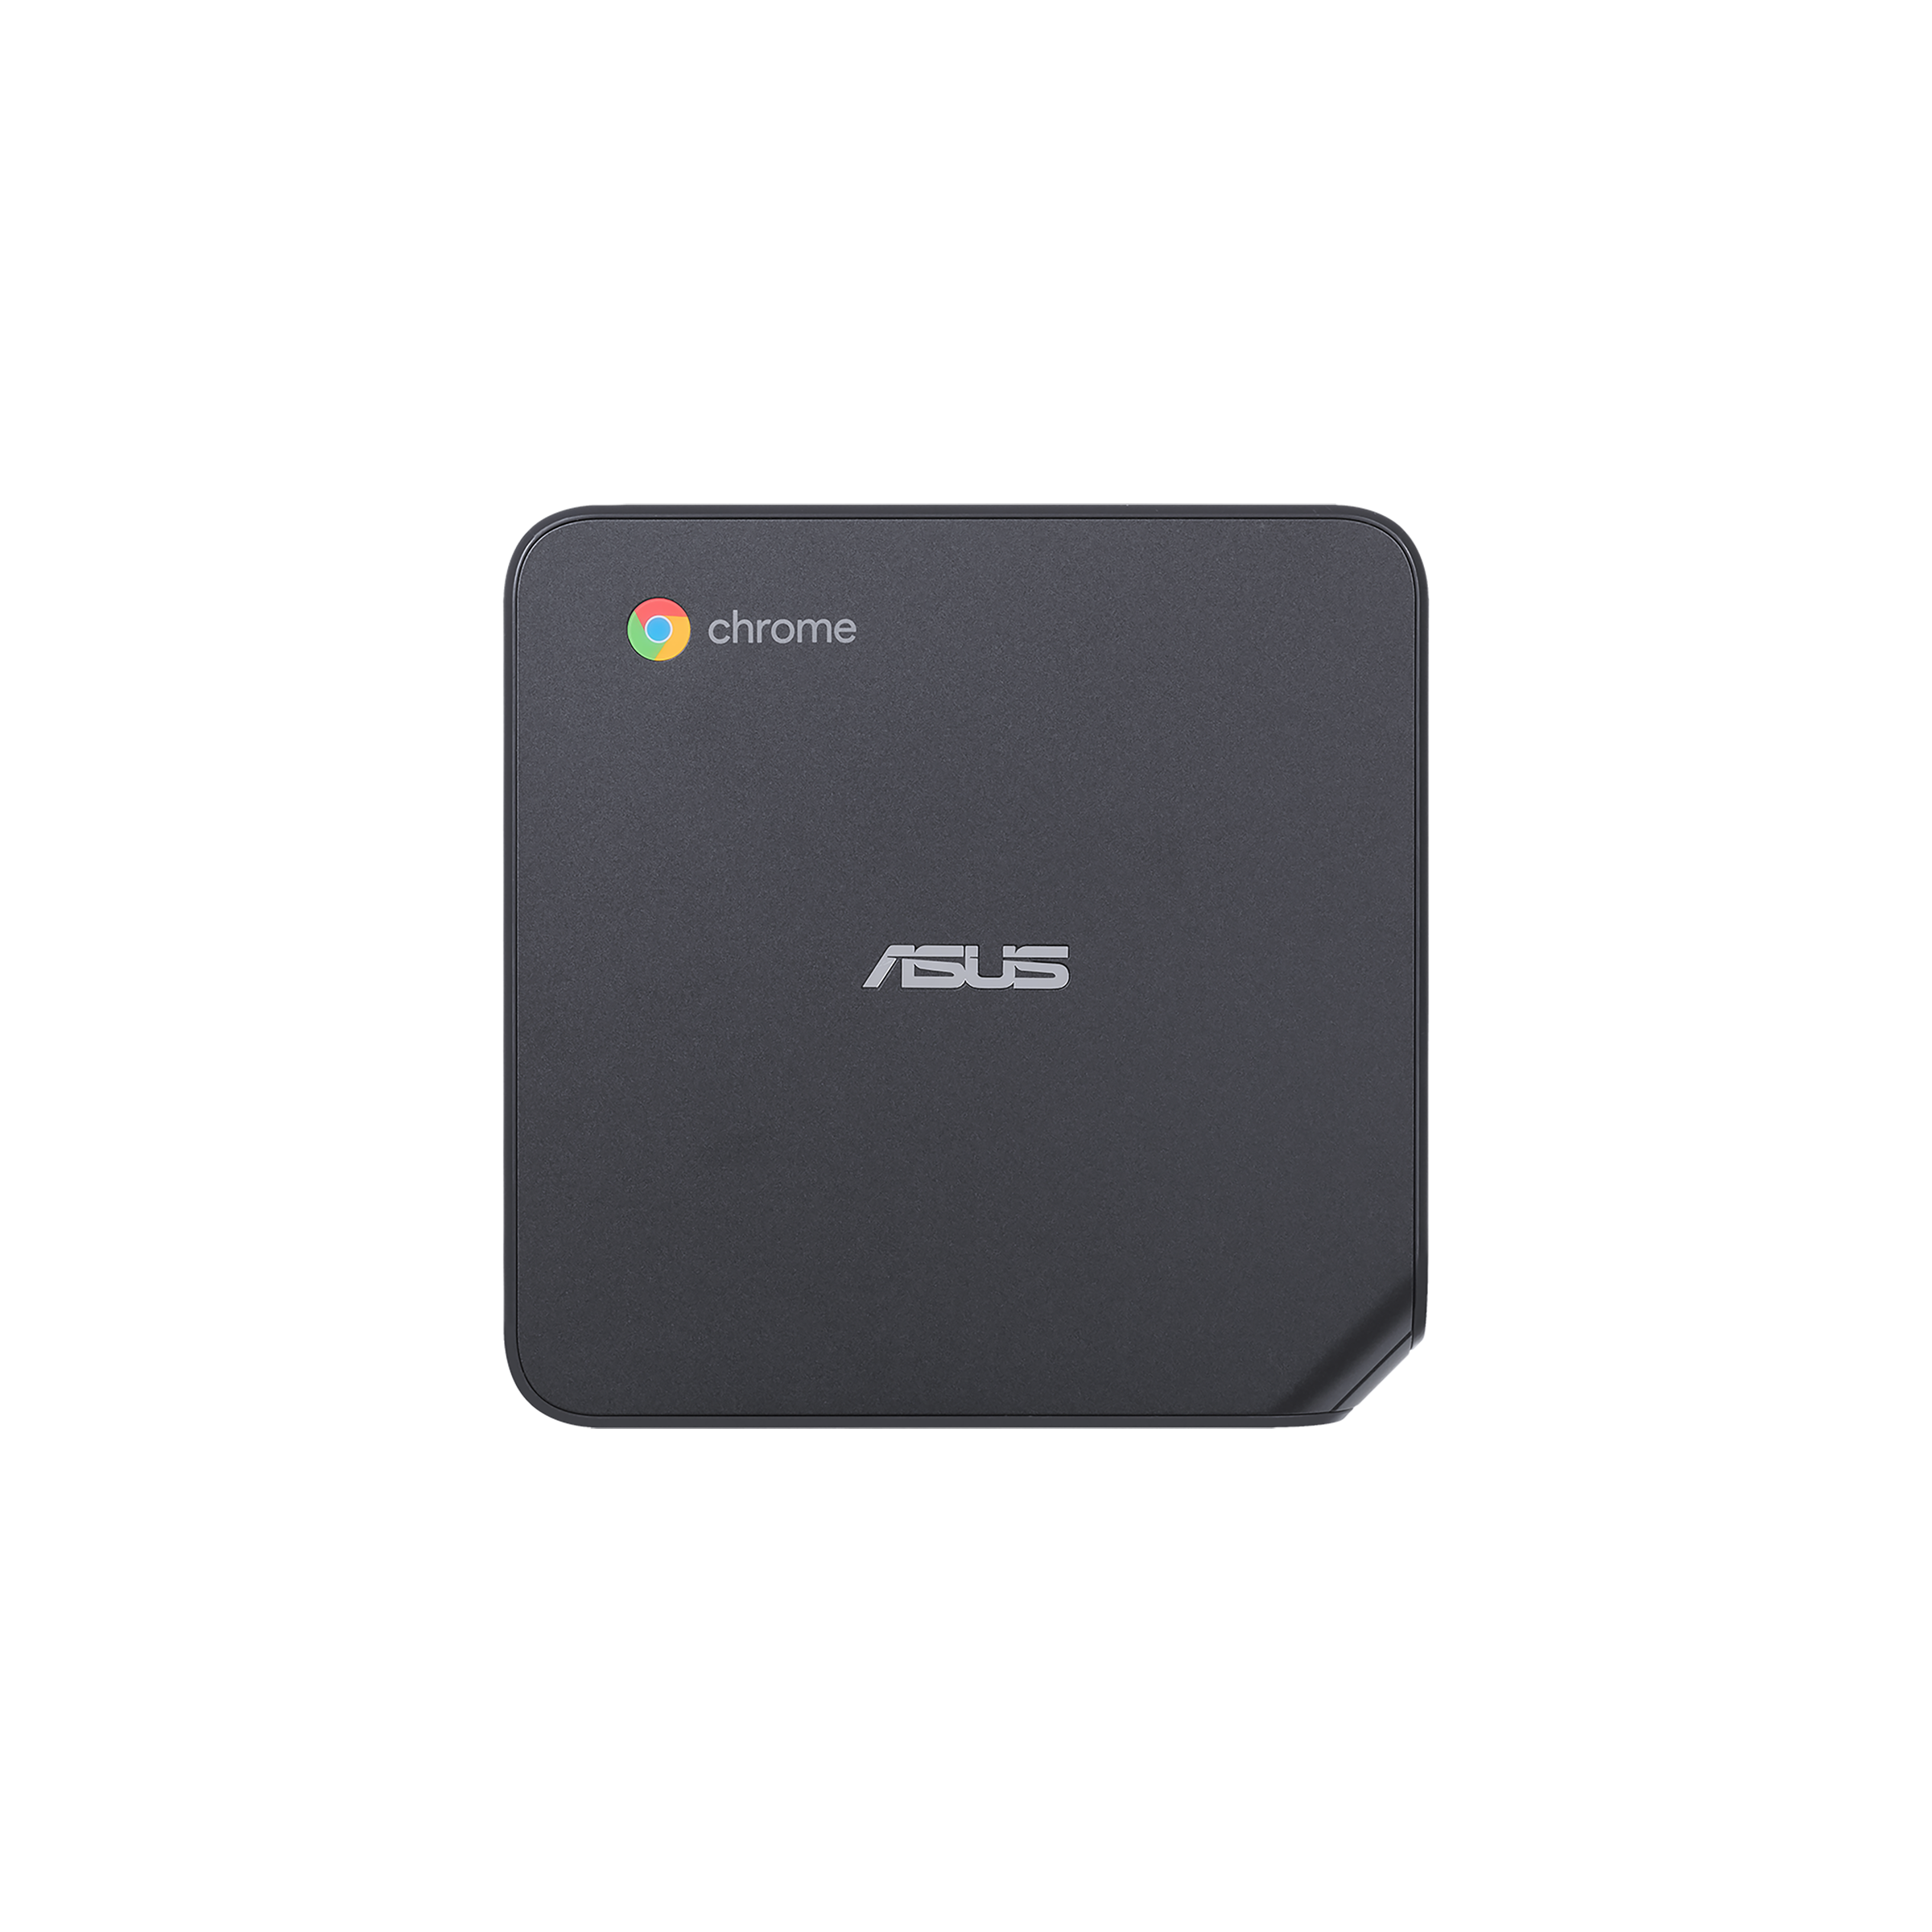 ASUS Chromebox 4 - Tech Specs｜Mini PCs｜ASUS USA